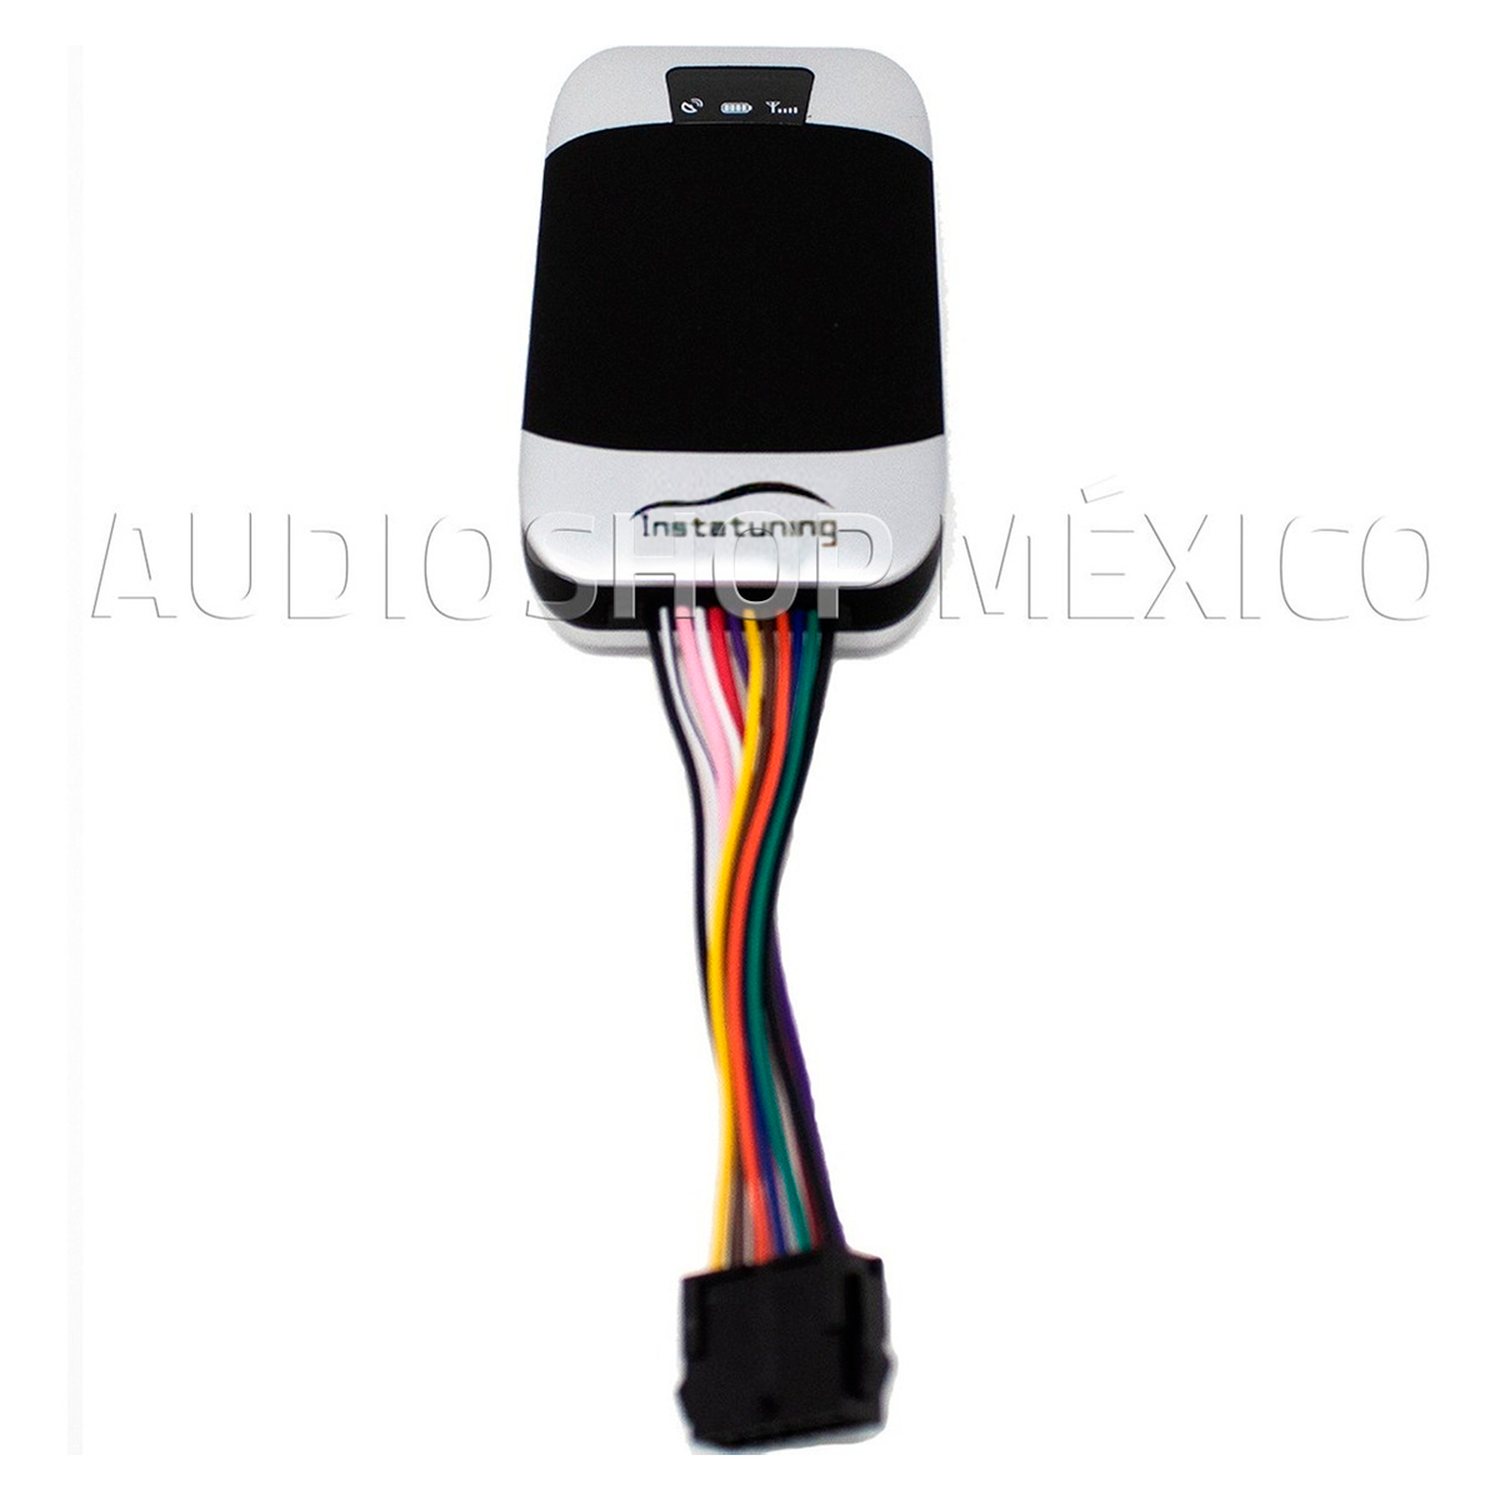 Localizador Satelital para Auto y Moto Gps Tracker TK303F GPSSMSGPRS 10 Años Plataforma Original Ala - Audioshop México lo mejor en Car Audio en México -  GPS Tracker